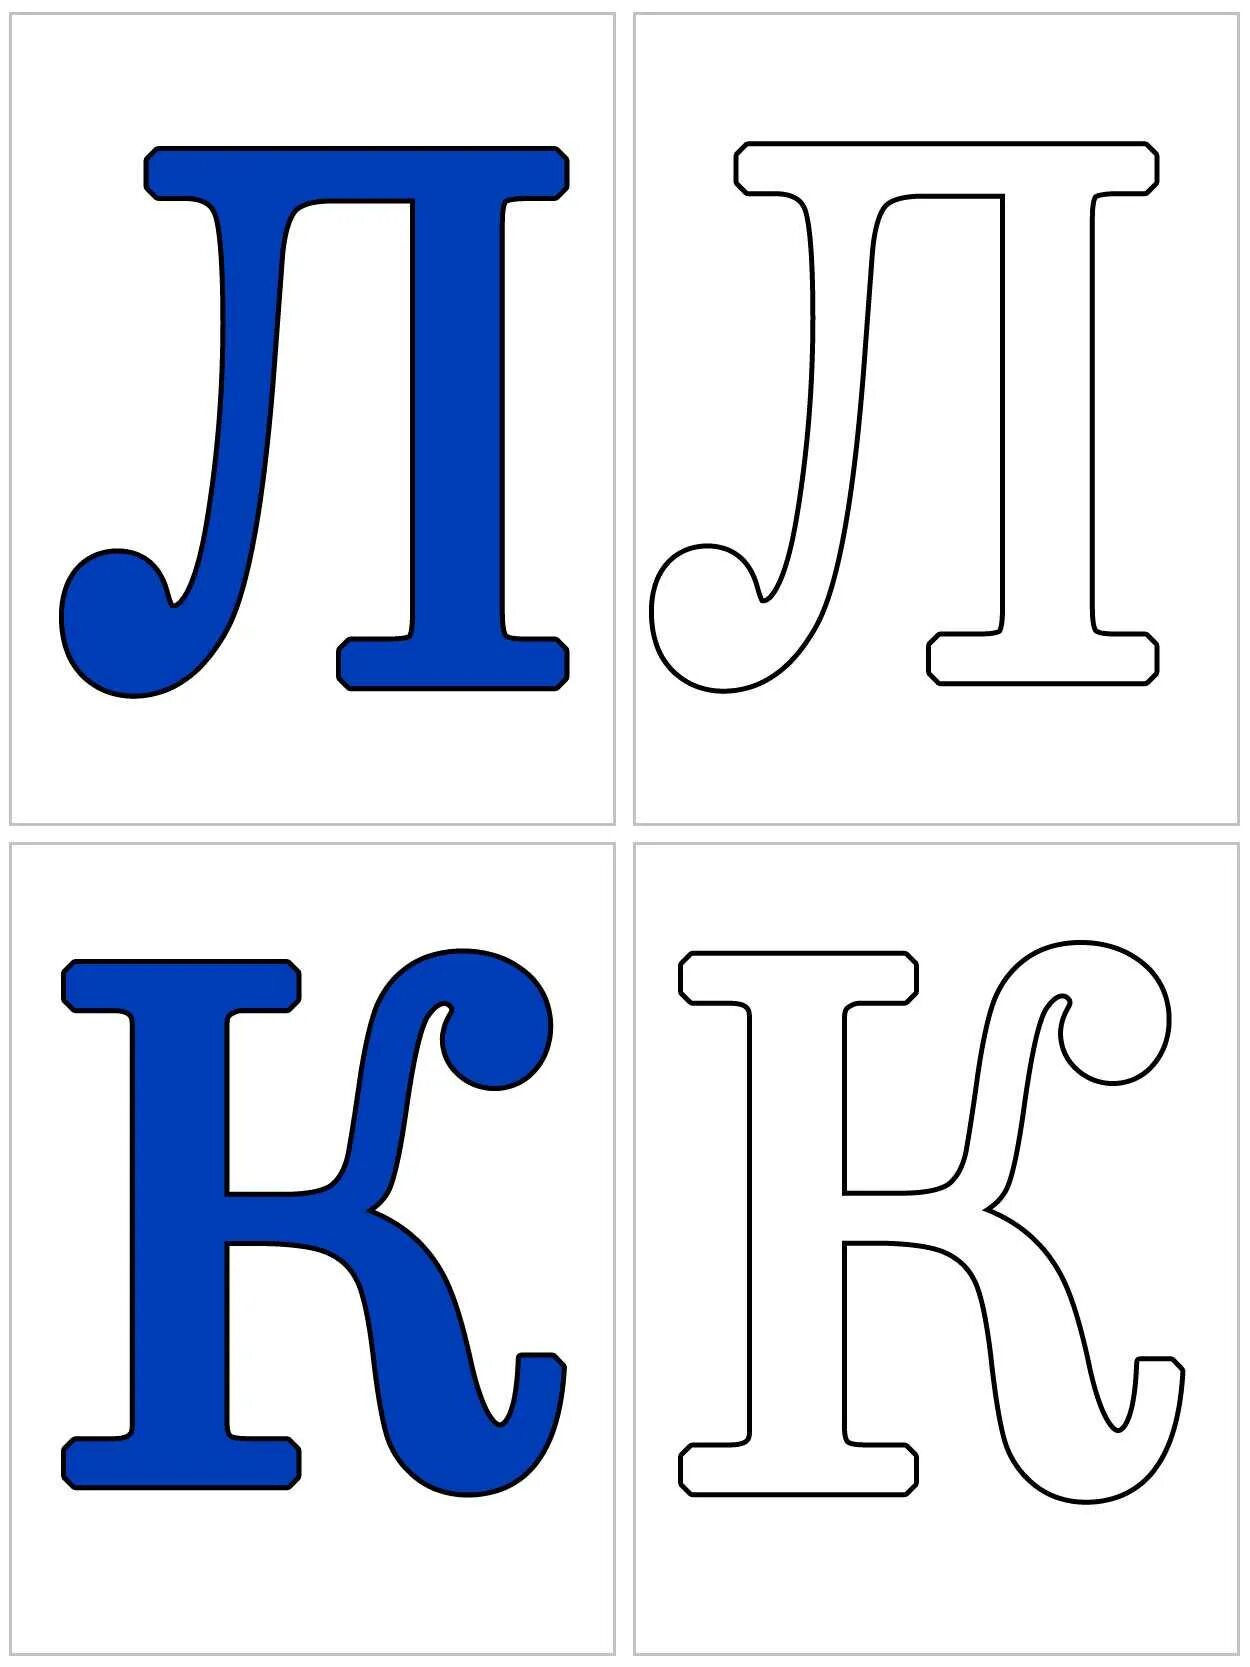 Распечатать алфавит по буквам формат а4. Алфавит и буквы. Буквы алфавита карточки. Буквы алфавита для распечатки. Буквы алфавита для распечатывания.